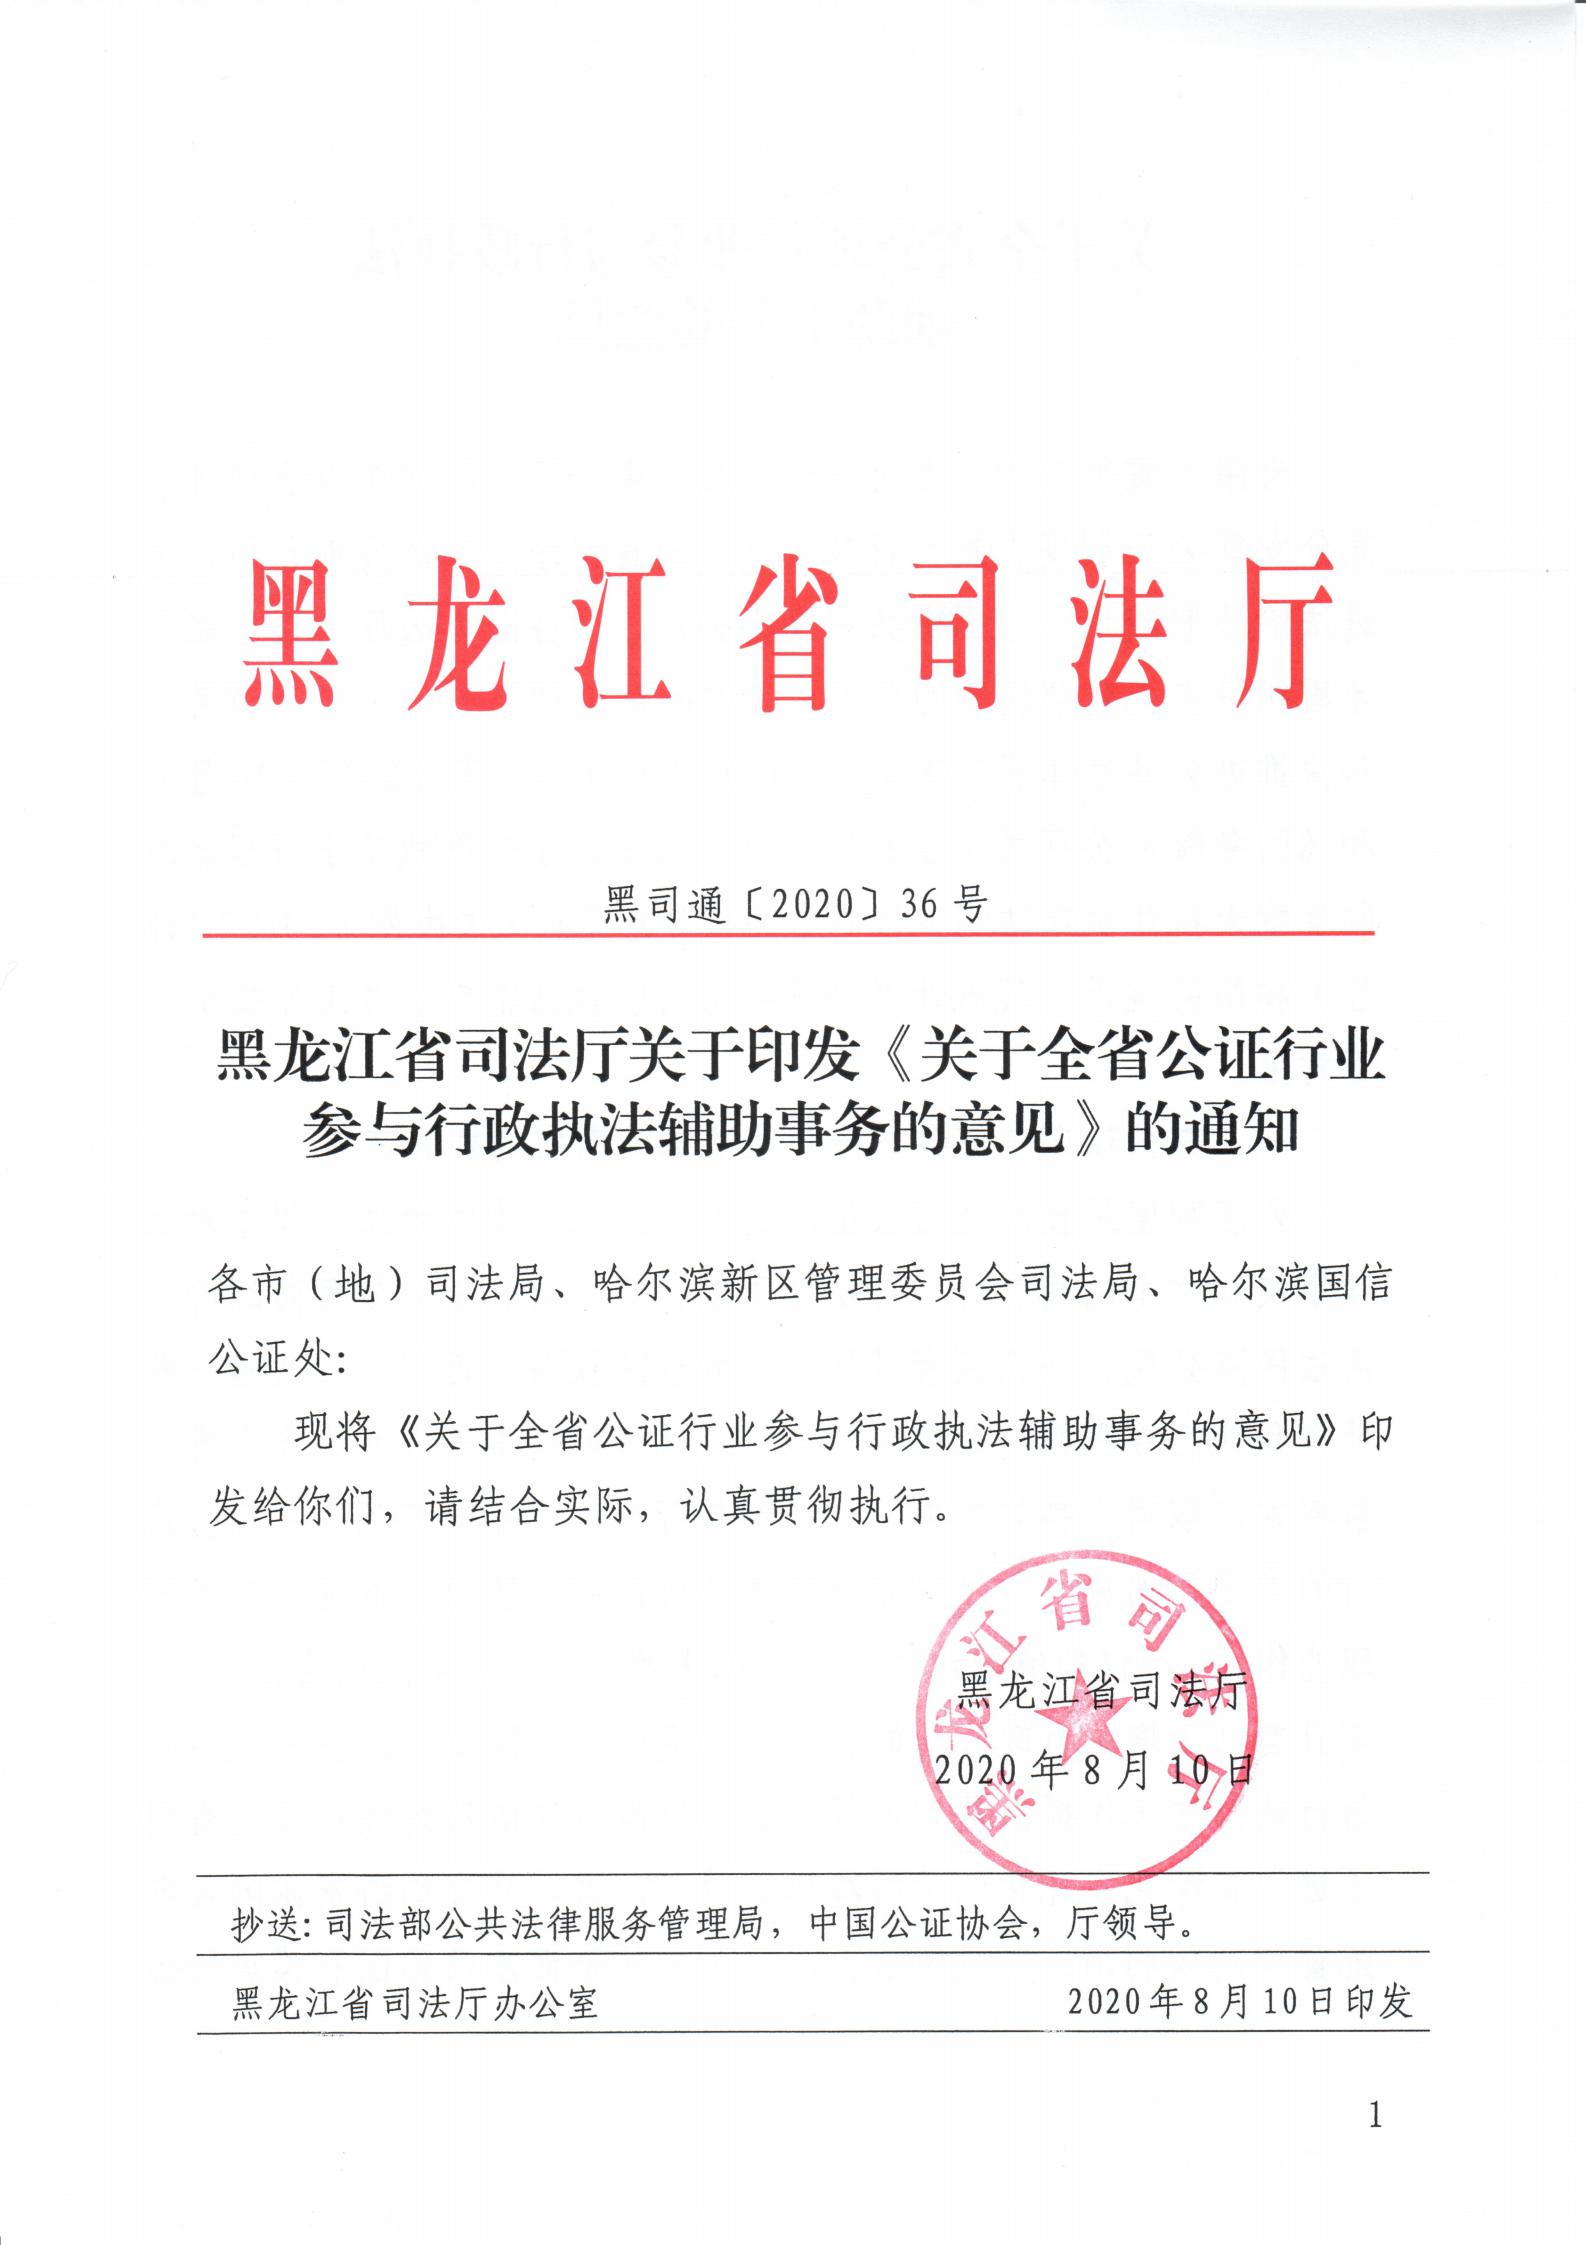 黑龙江省司法厅关于印发《关于全省公证行业参与行政执法辅助事务的意见》的通知